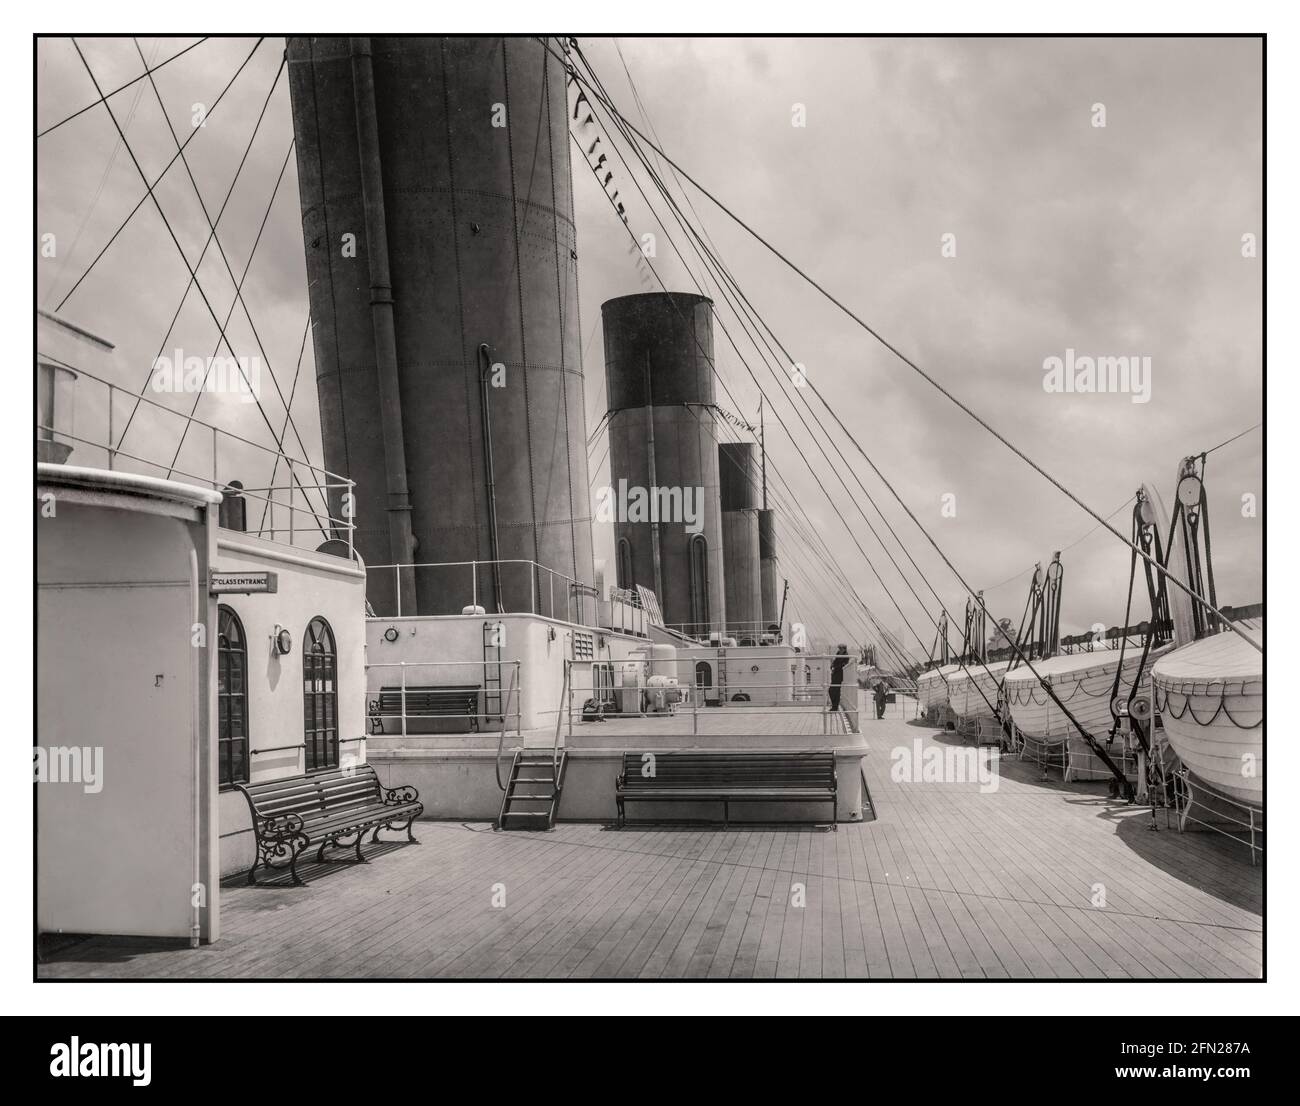 PONTE TITANIC LIFBOATS 1910s RMS Titanic First Class Boat Deck White Star Line con ponti immacolati, ingresso di seconda classe a sinistra con linea di salvagente a destra. Foto promozionale prima di salpare sul suo viaggio fatidico. Foto Stock